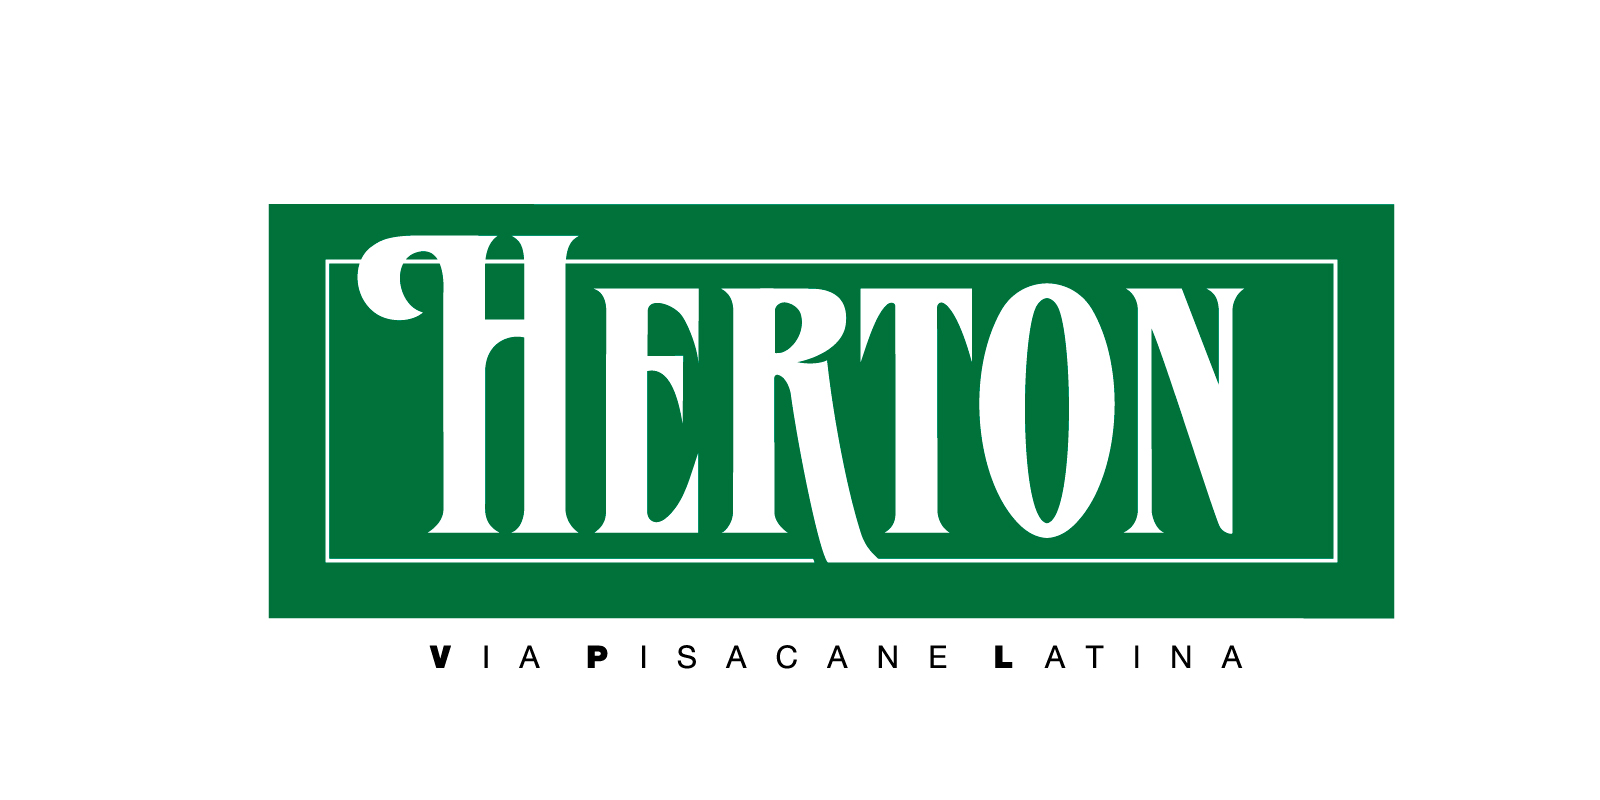 Herton